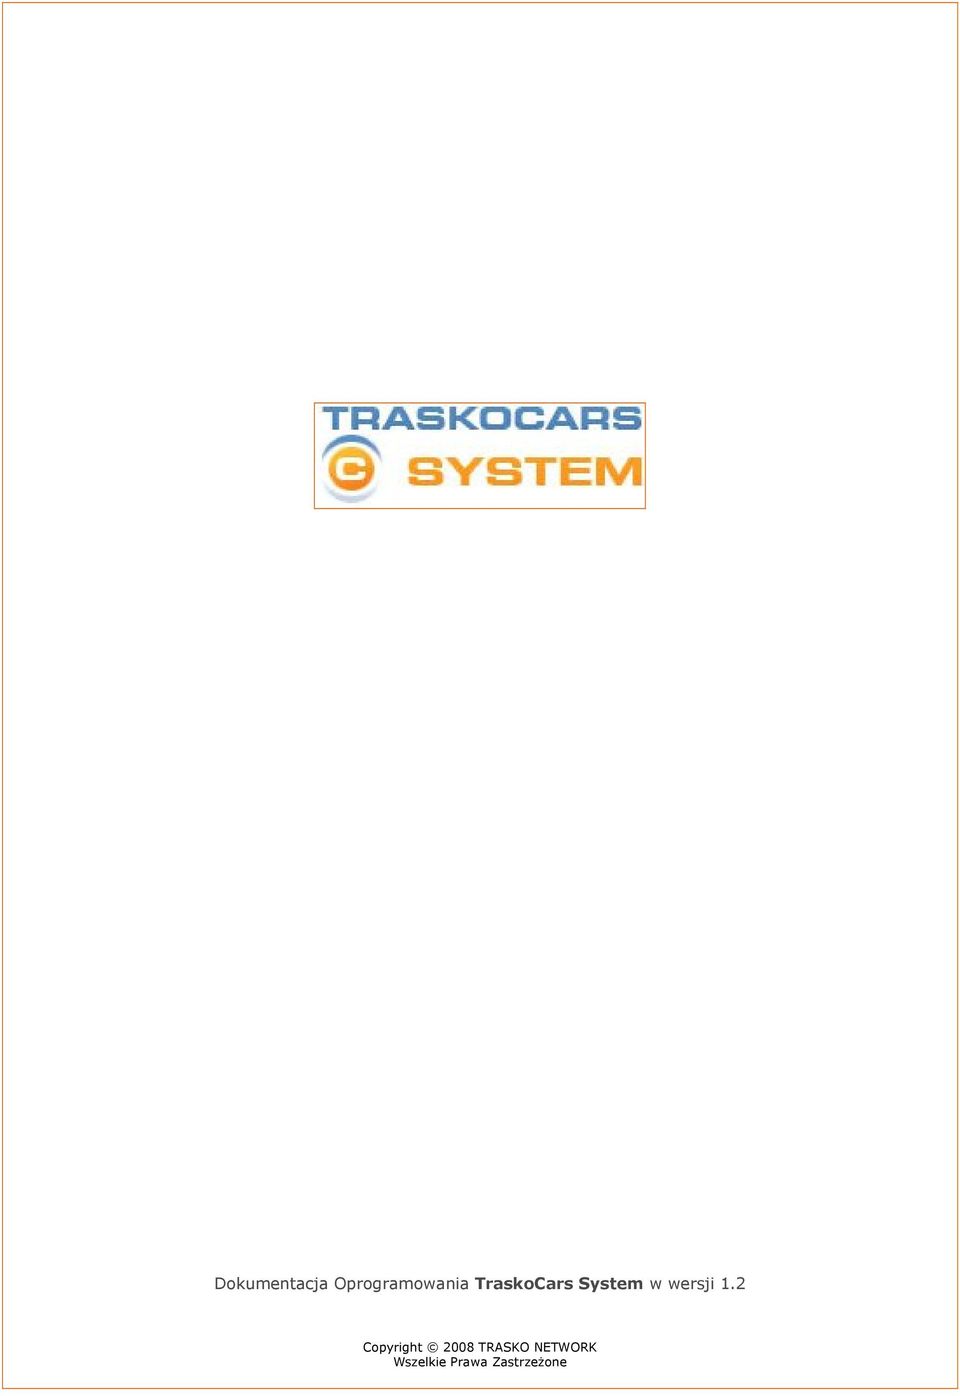 TraskoCars System w